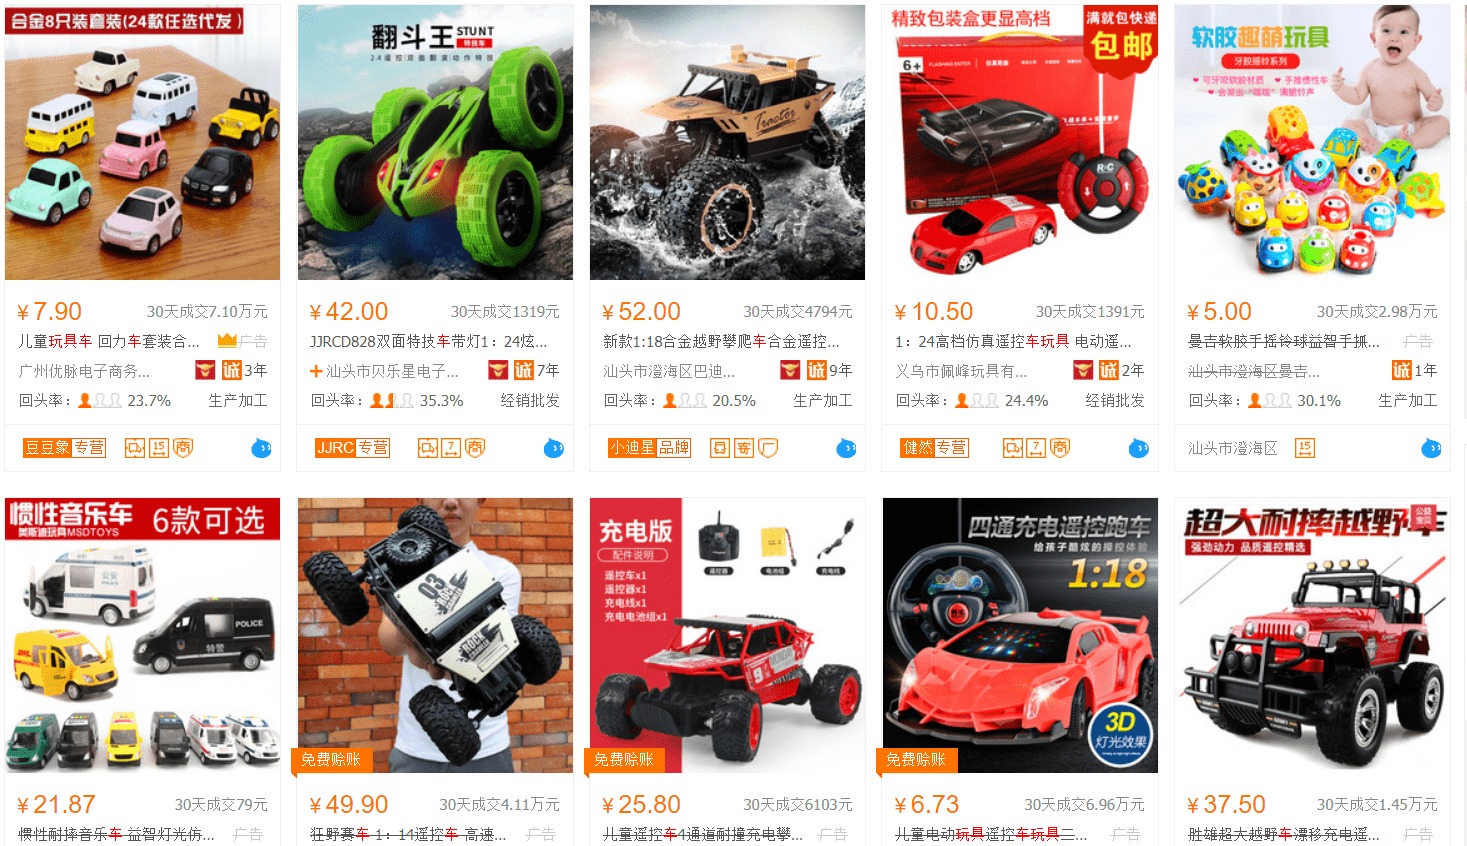 Nhập hàng đồ chơi trẻ em trên Taobao